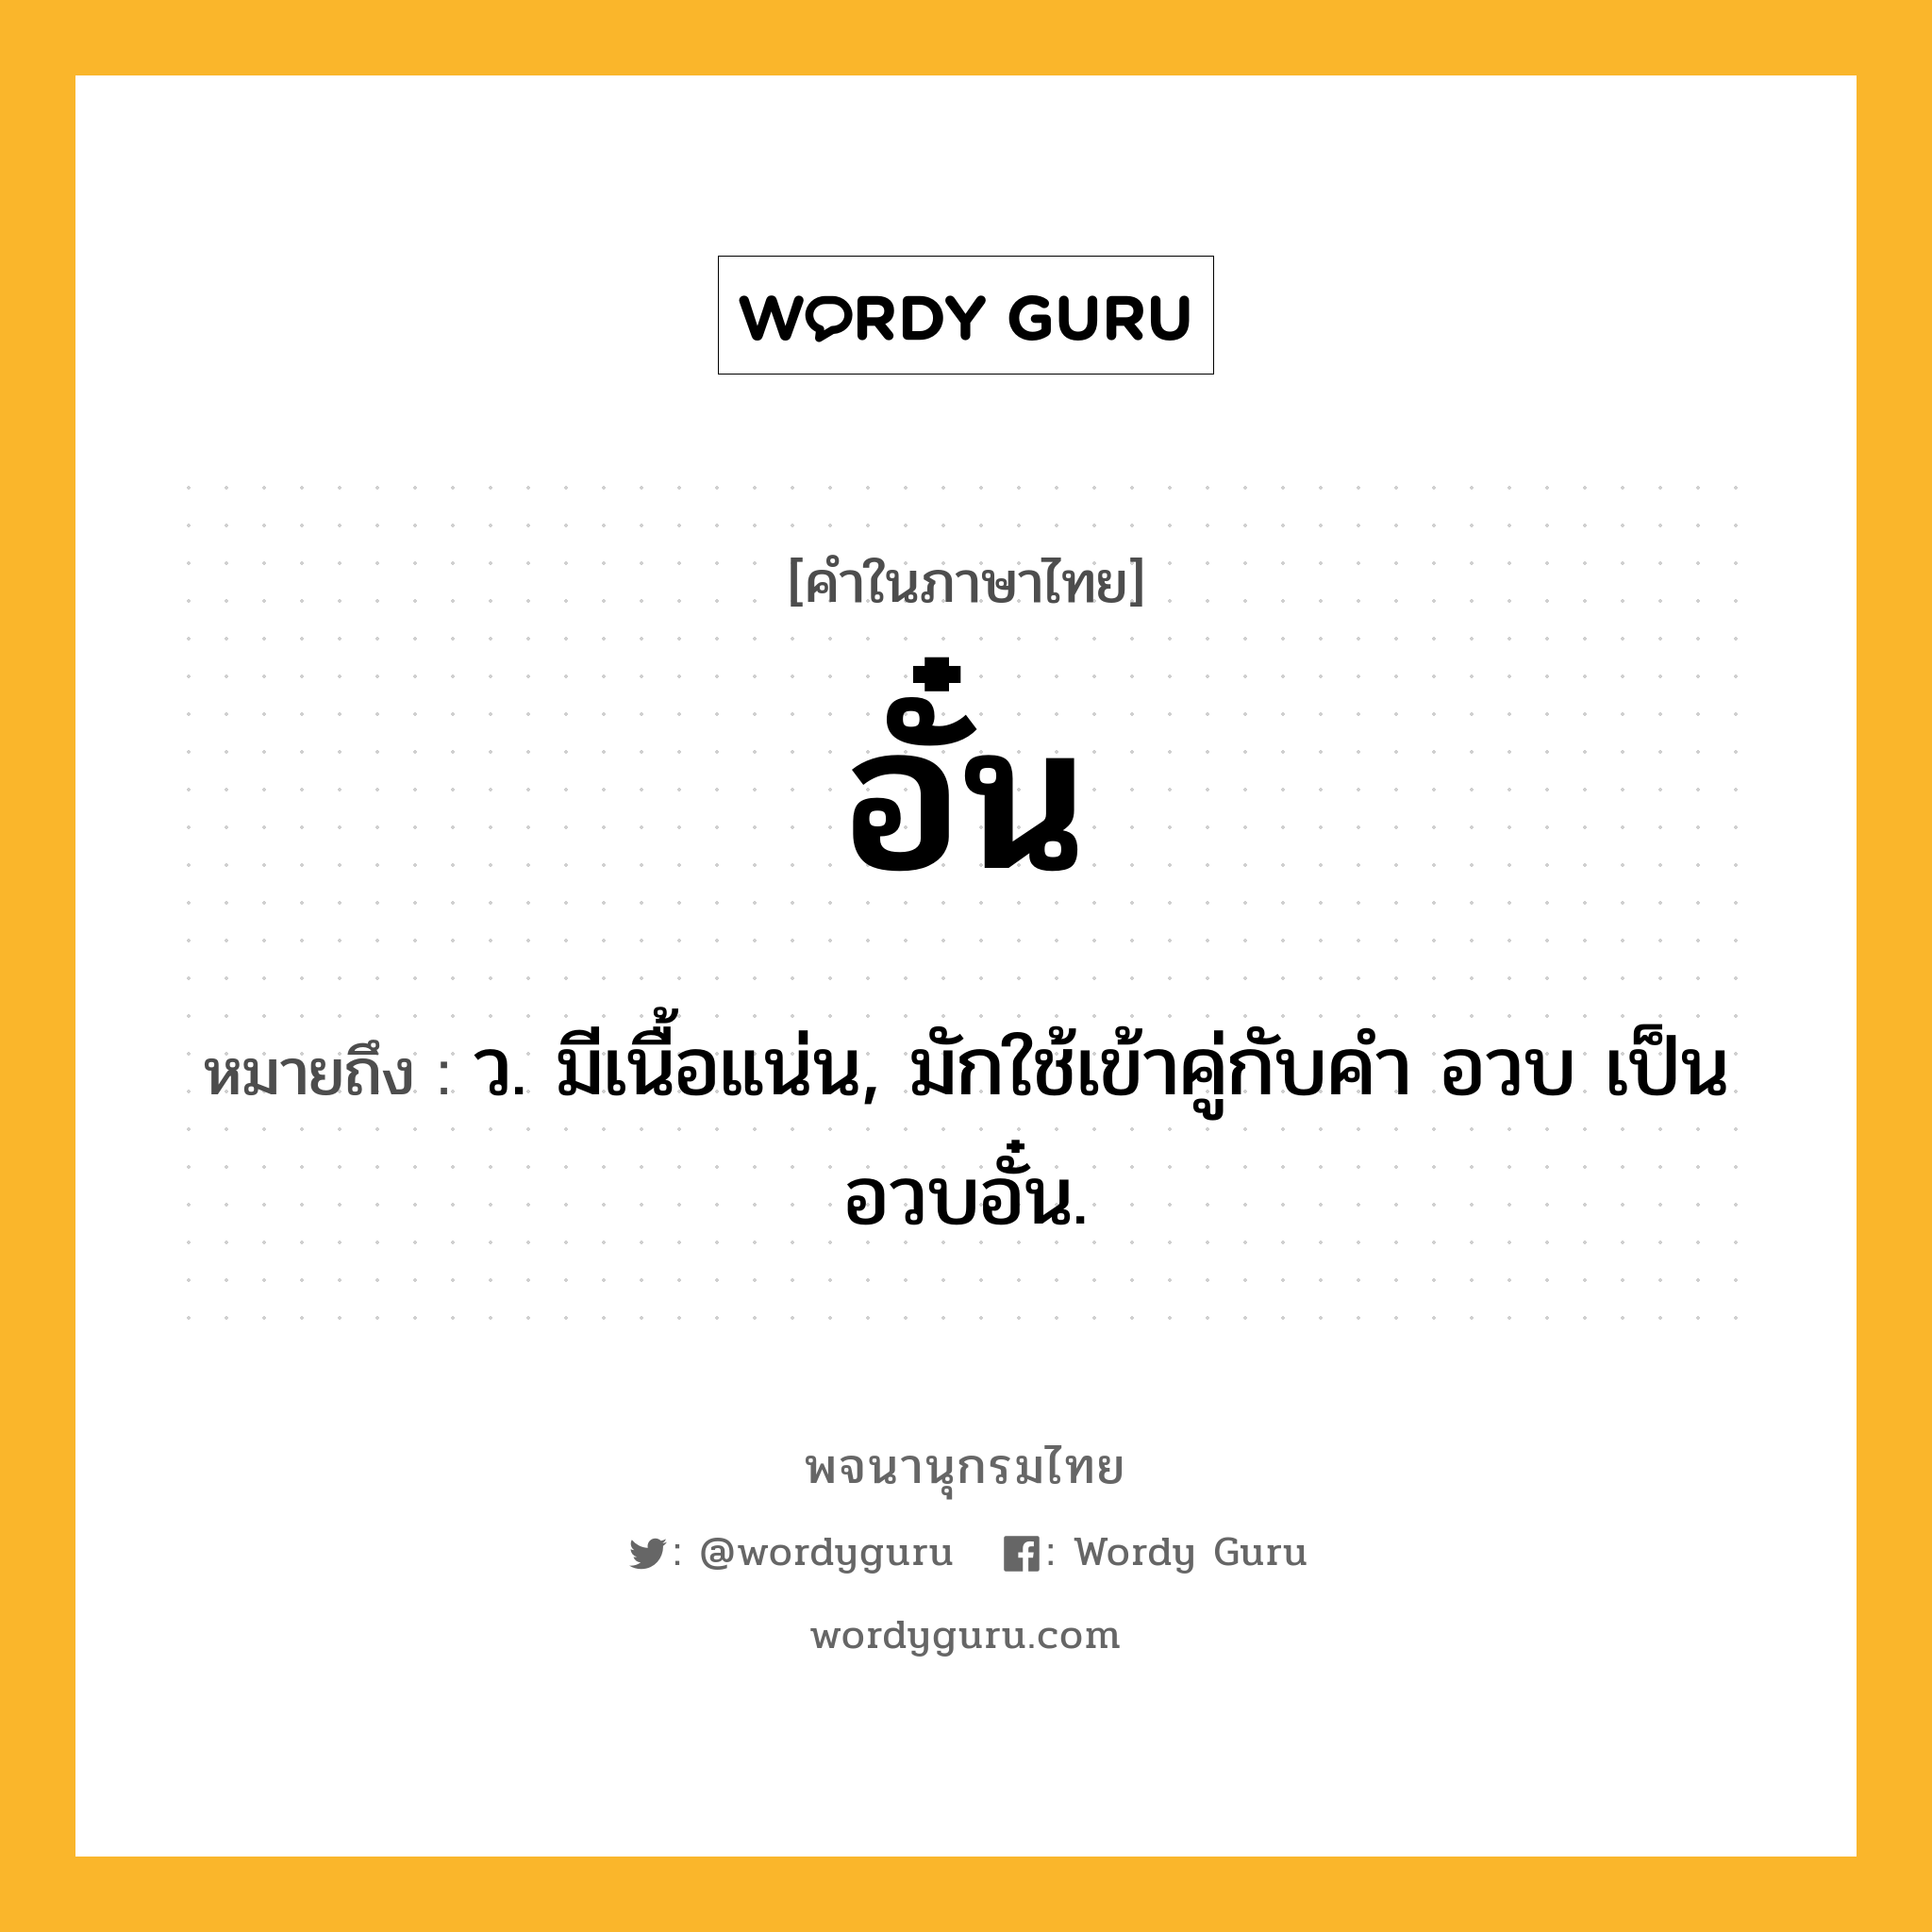 อั๋น ความหมาย หมายถึงอะไร?, คำในภาษาไทย อั๋น หมายถึง ว. มีเนื้อแน่น, มักใช้เข้าคู่กับคำ อวบ เป็น อวบอั๋น.